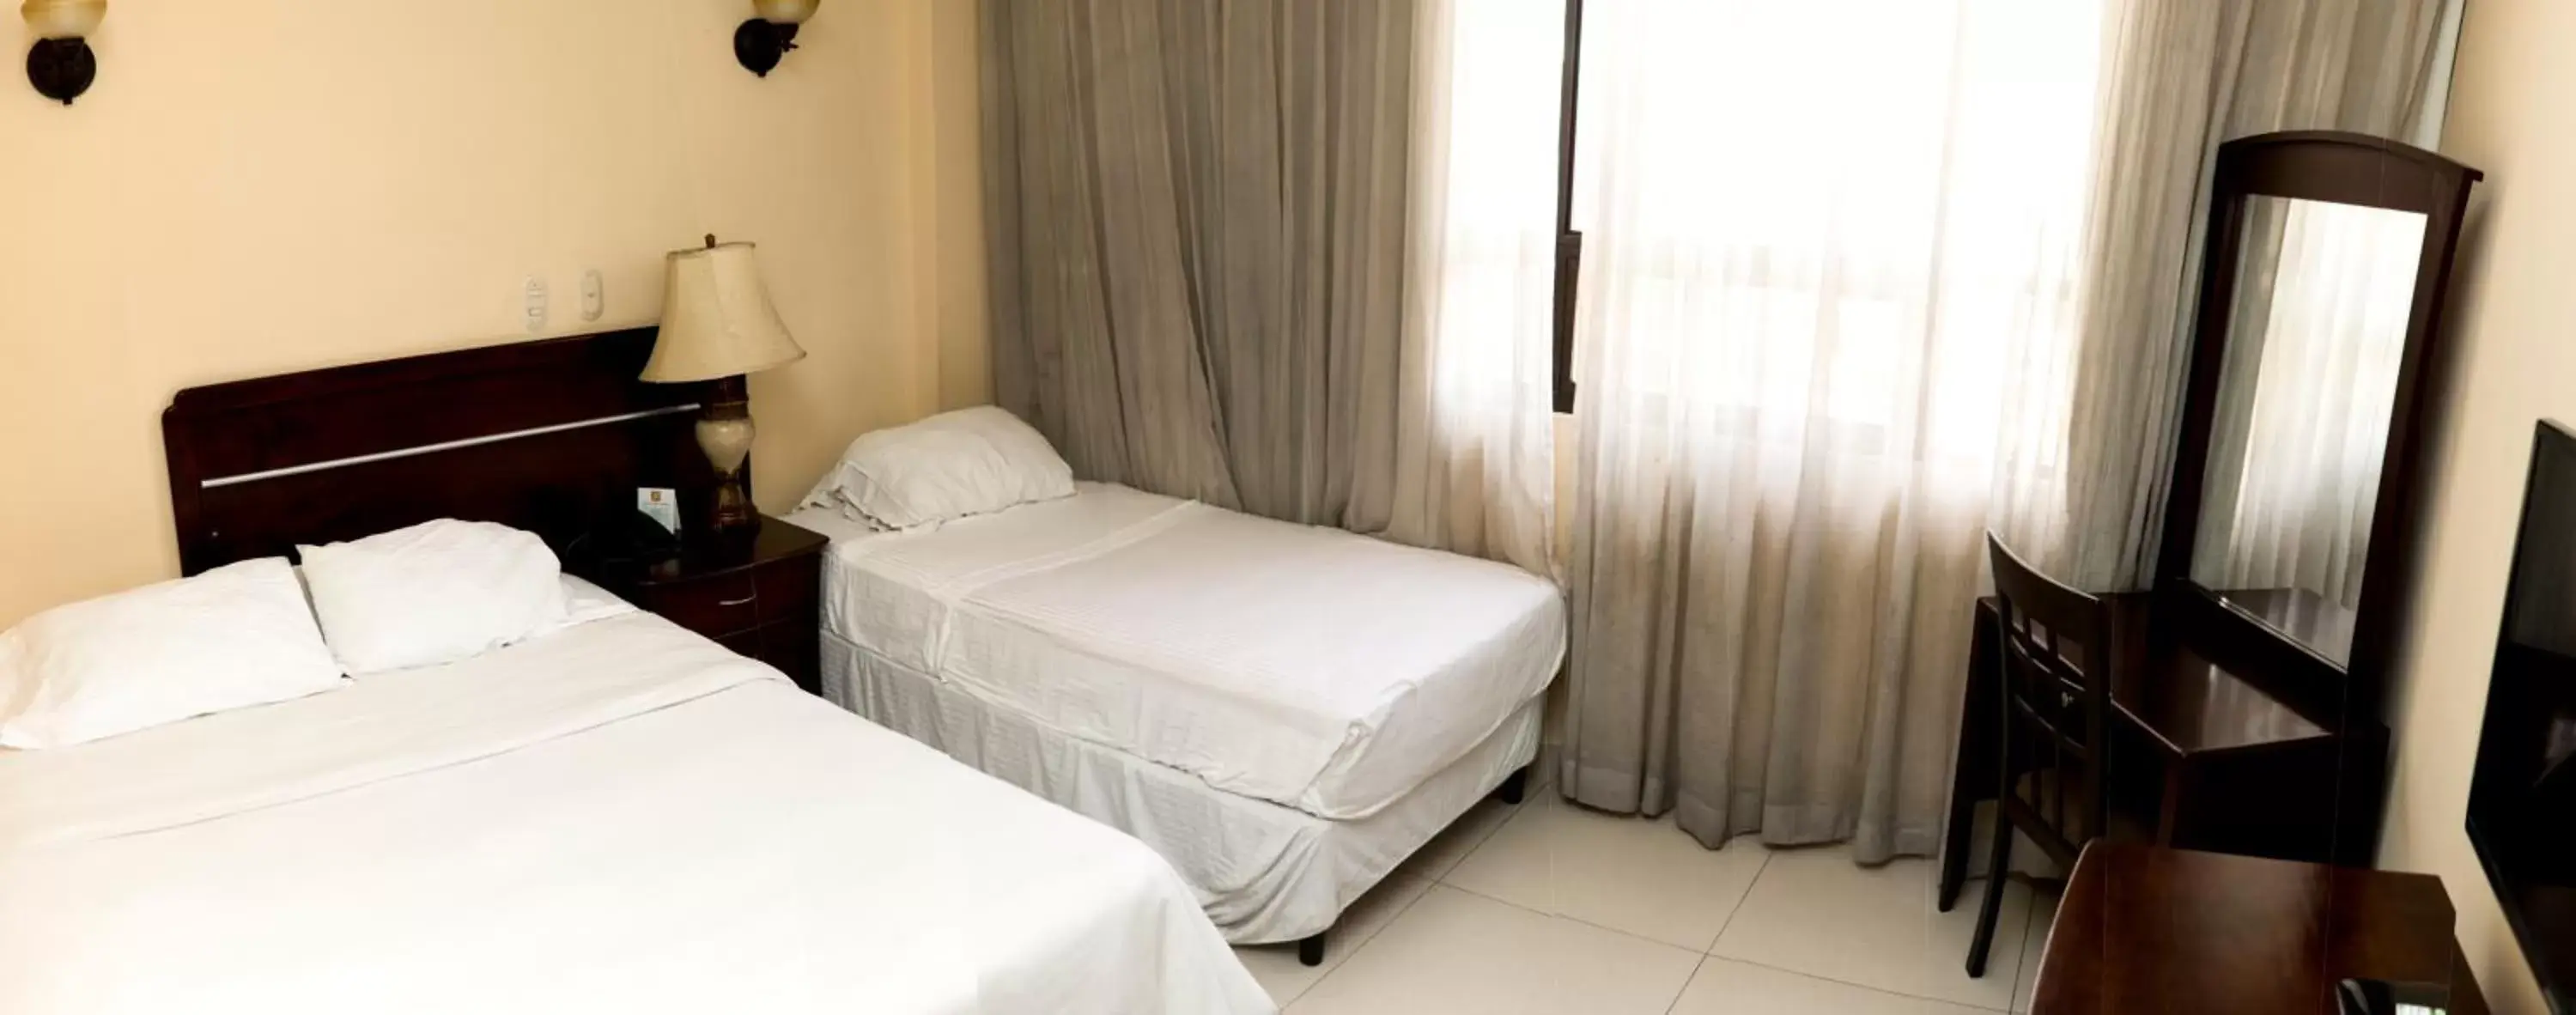 Bedroom, Room Photo in Hotel Novo